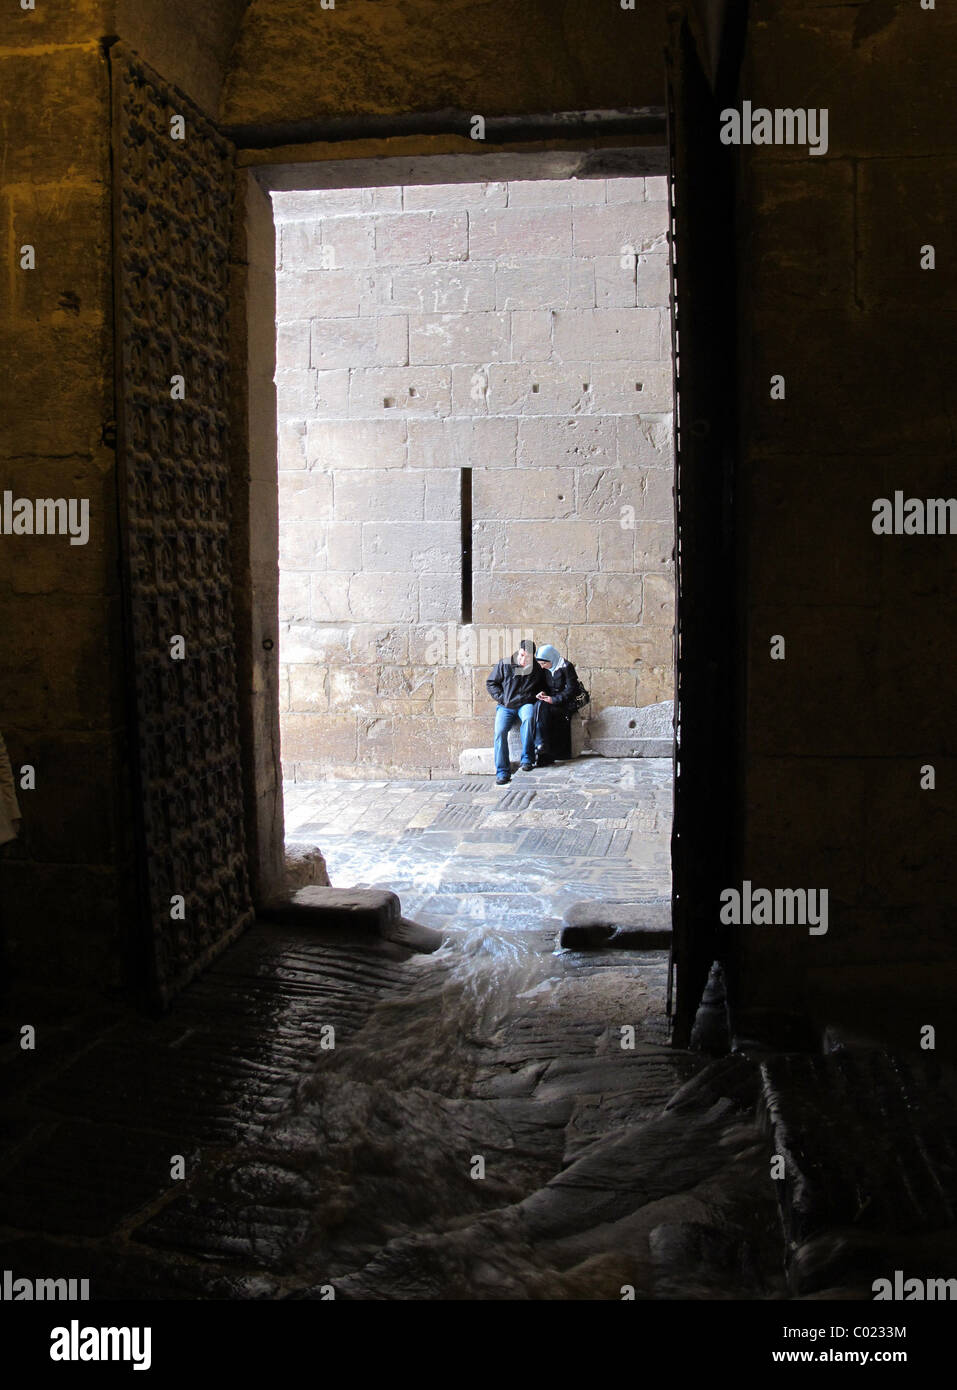 L'entrée principale de la citadelle de l'Aleppo Syrie avec l'eau de pluie passé en courant un homme et femme à l'abri de la pluie Banque D'Images